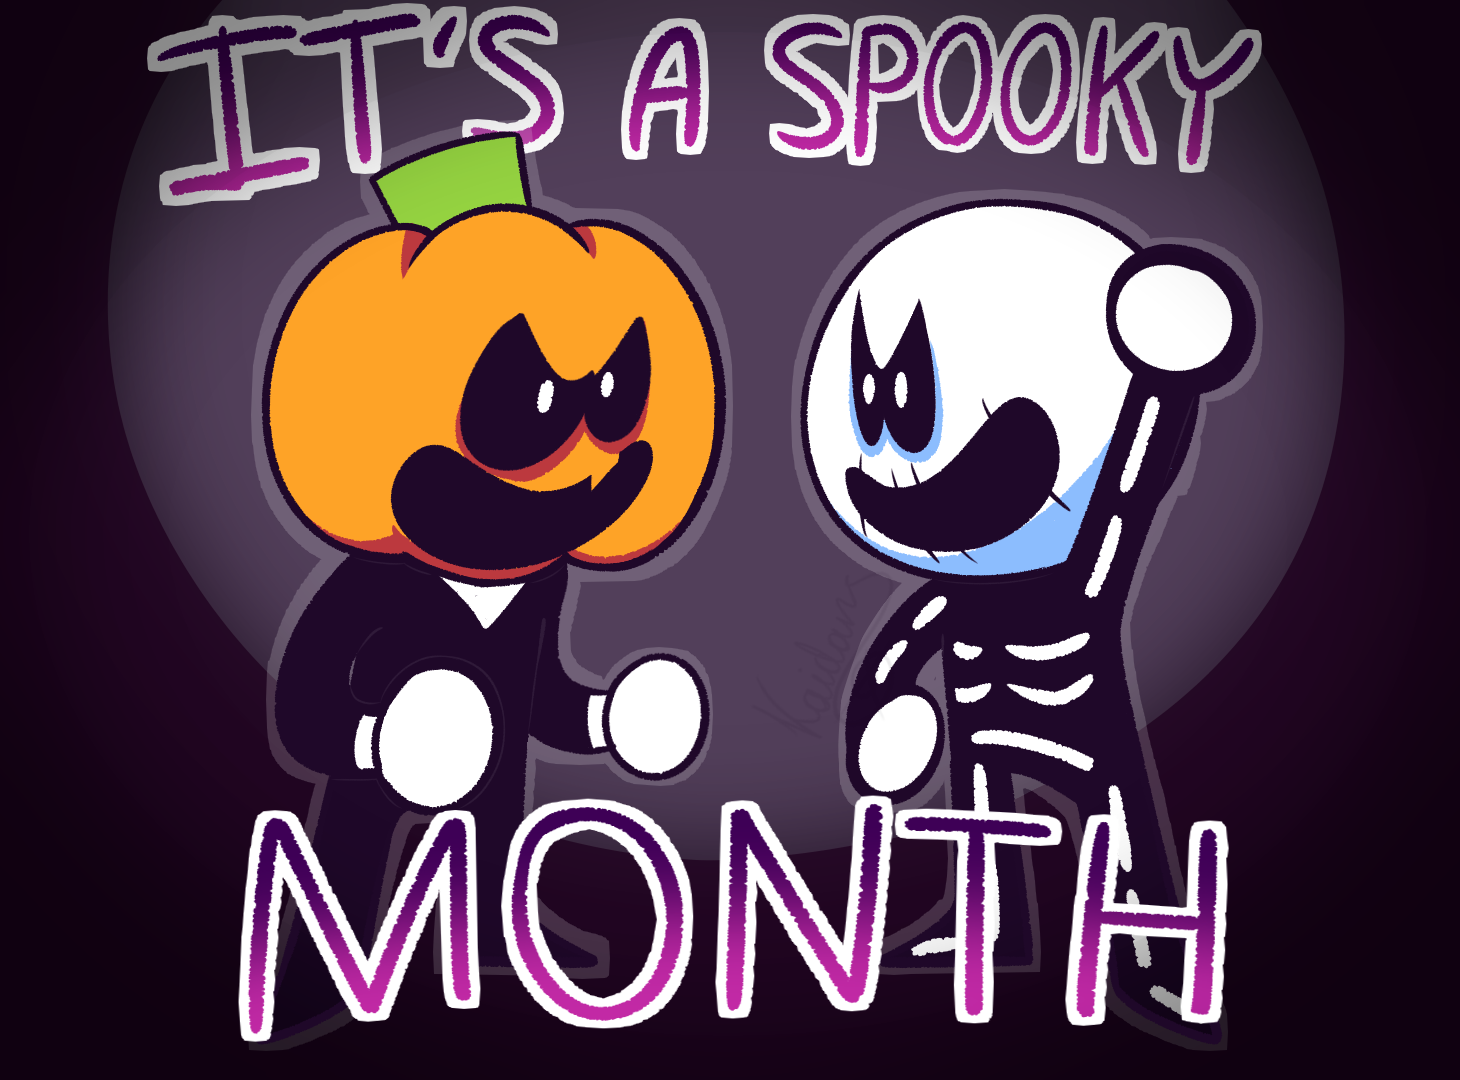 It's Spooky's Month (Spooky Month X SJM) by EmptyAzurite on DeviantArt